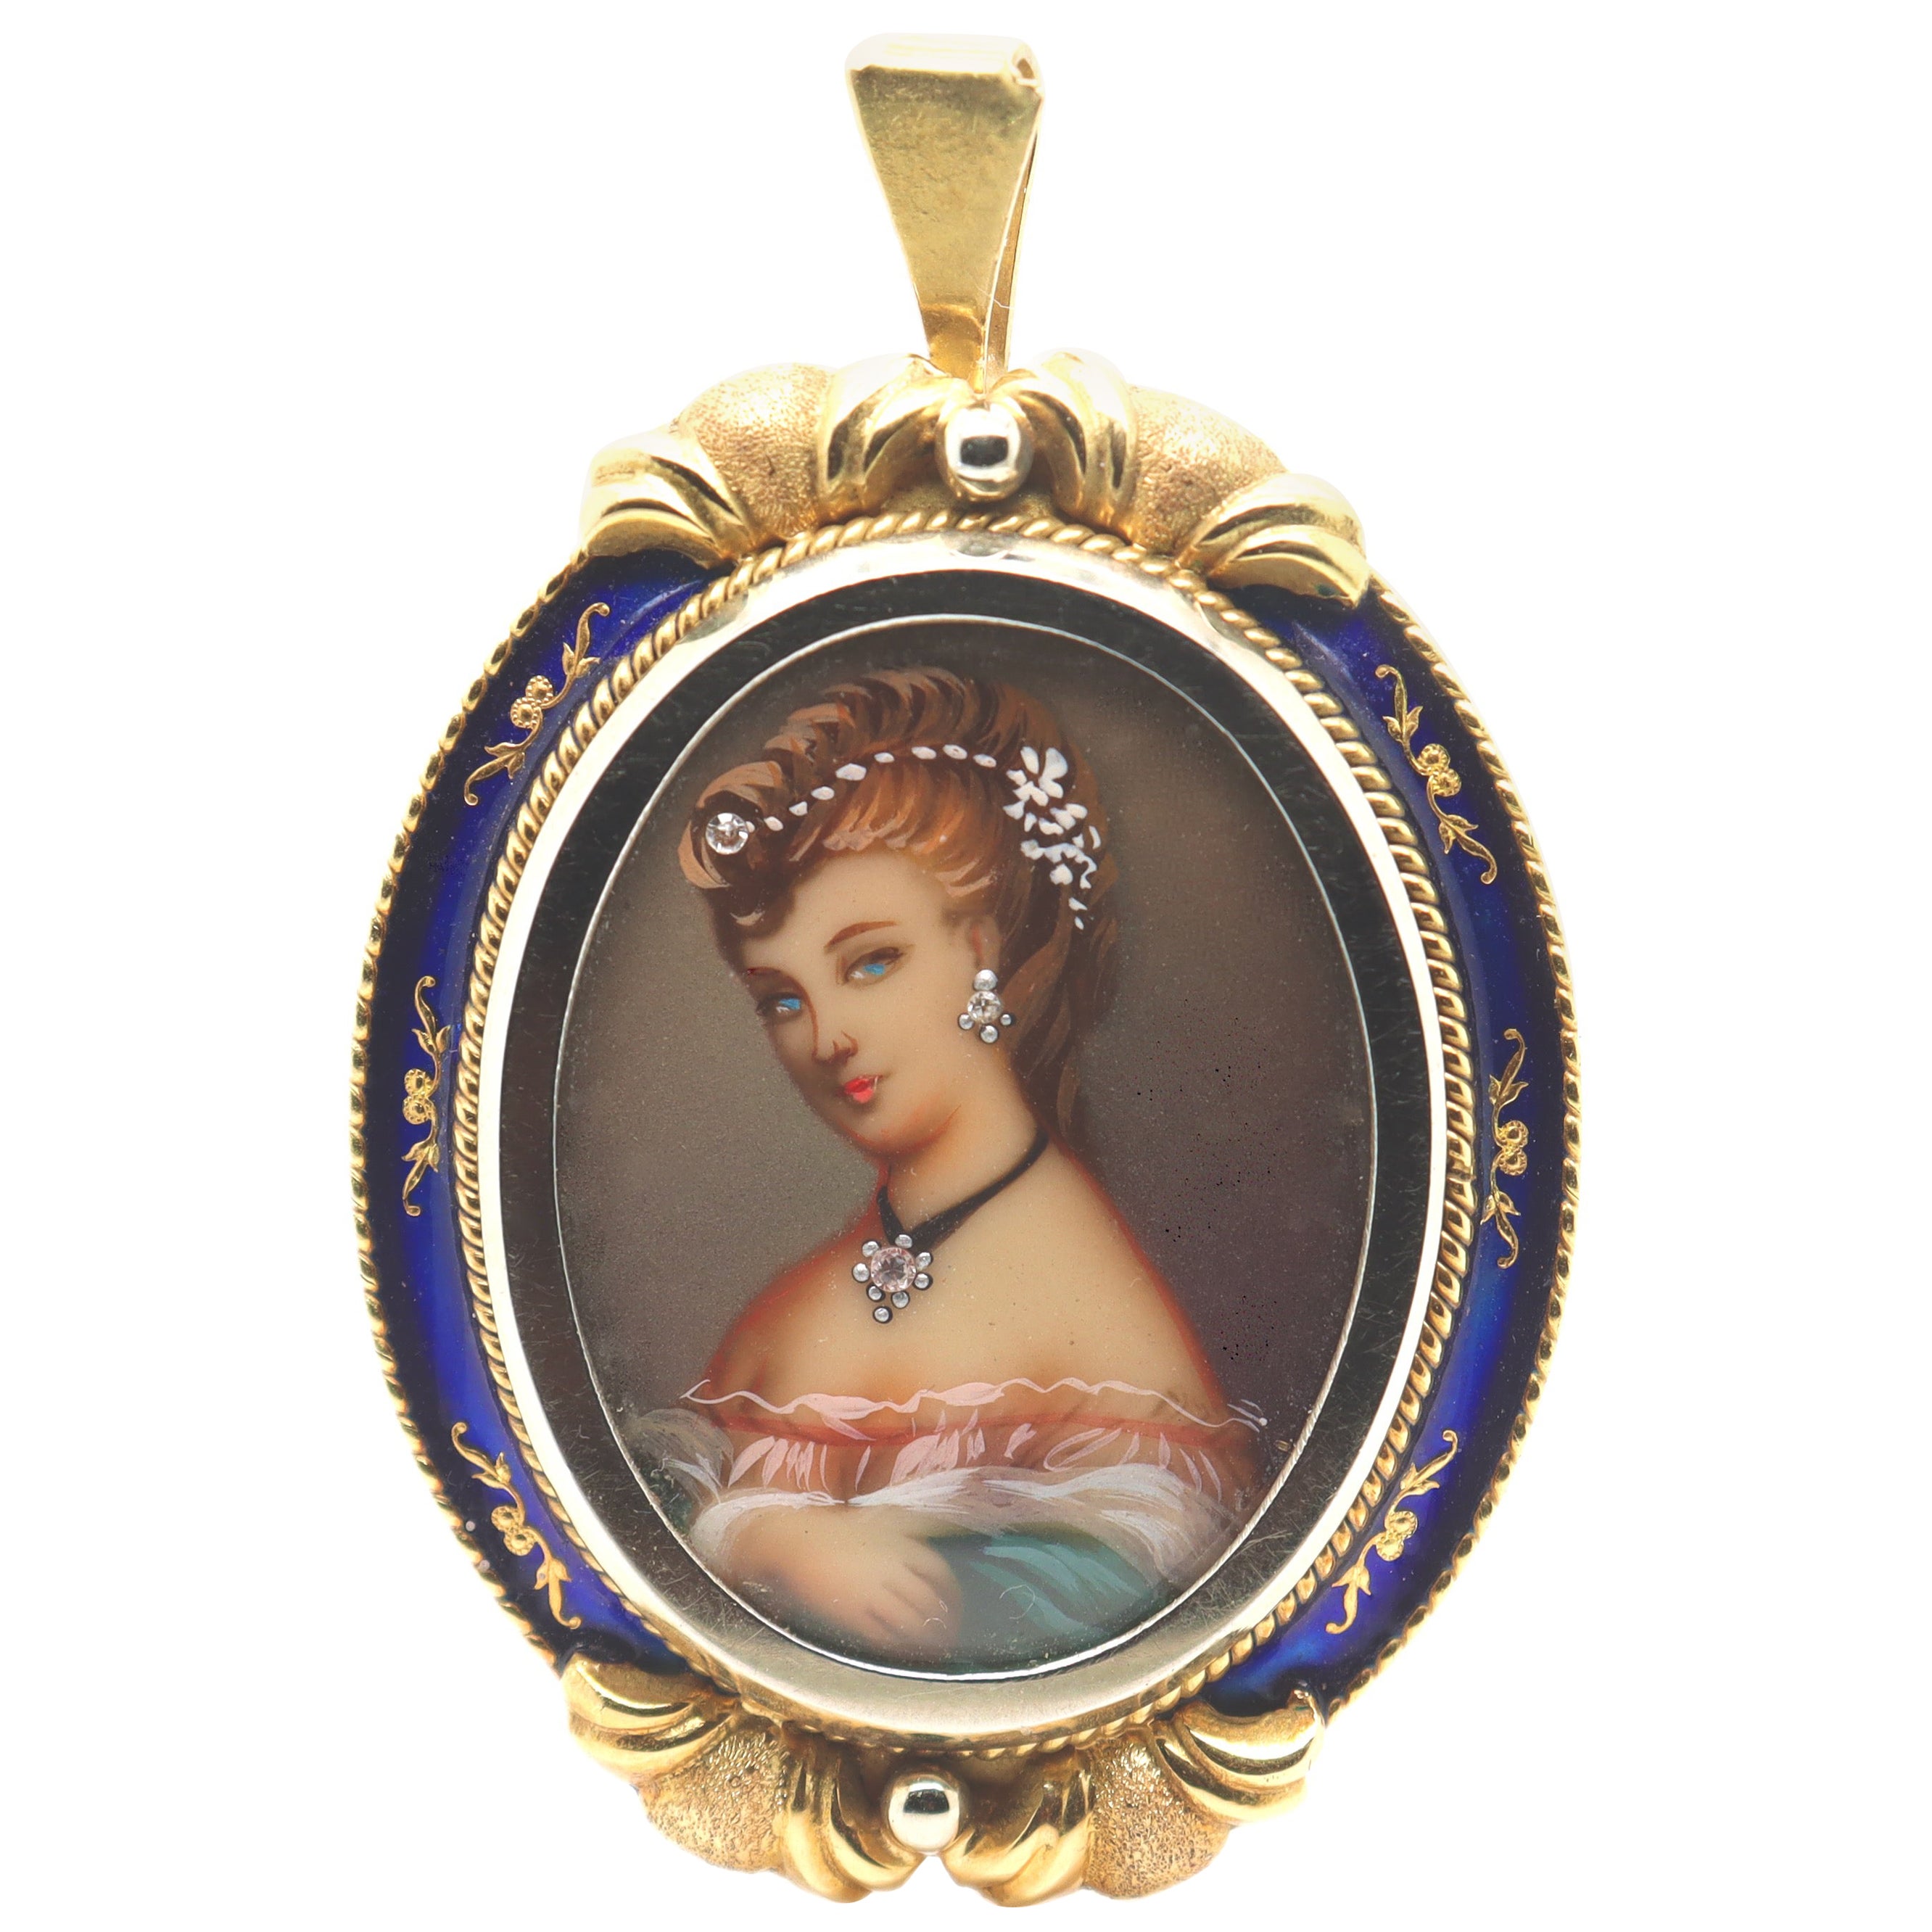 Vintage Corletto 18K Gold & Blue Enamel Portrait Miniature Brooch or Pendant For Sale